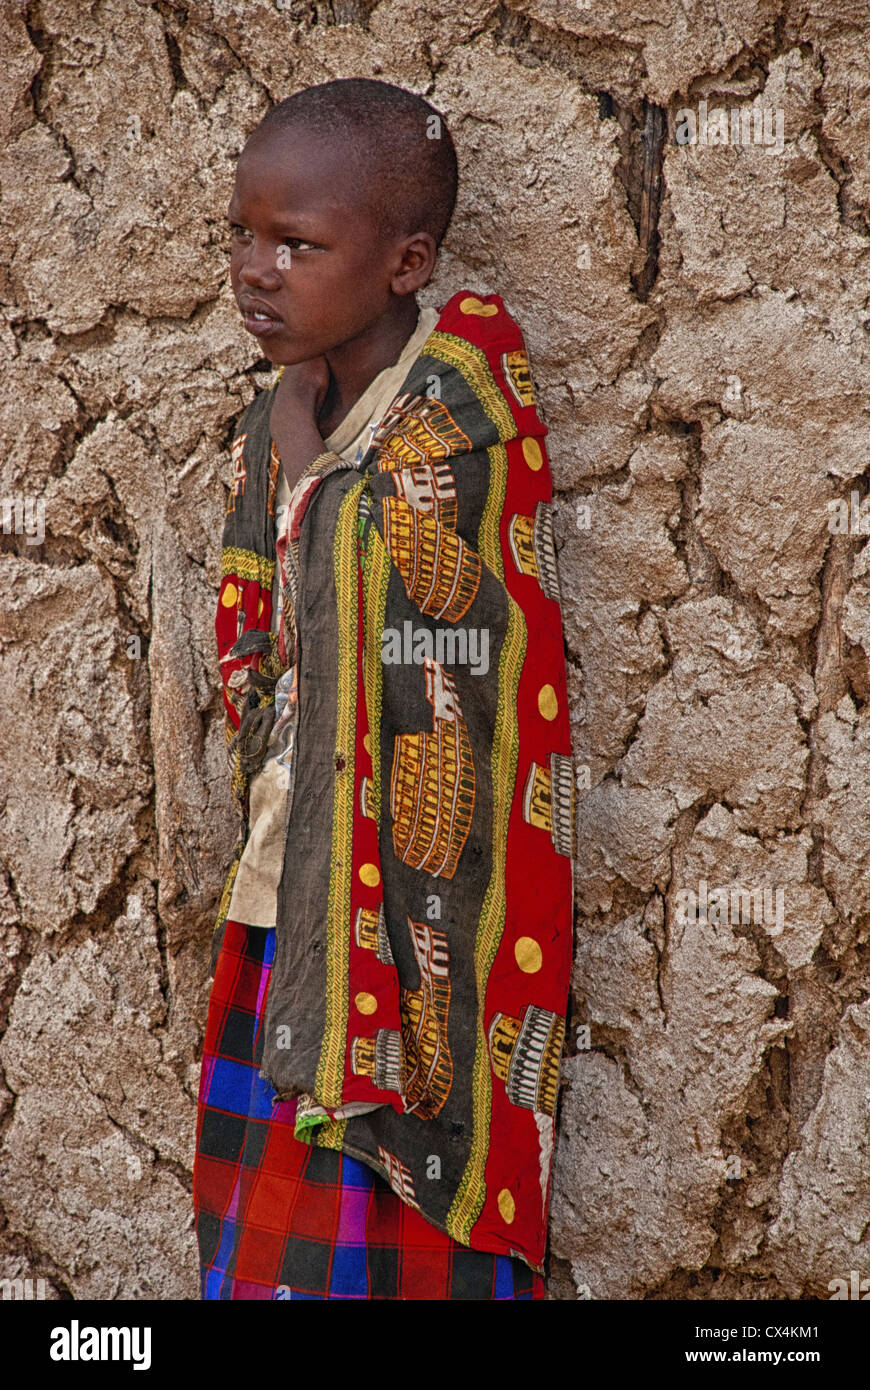 Enfant masaï, portant des vêtements traditionnels, debout contre un mur de boue dans un village de la Masai Mara, Kenya, Afrique Banque D'Images